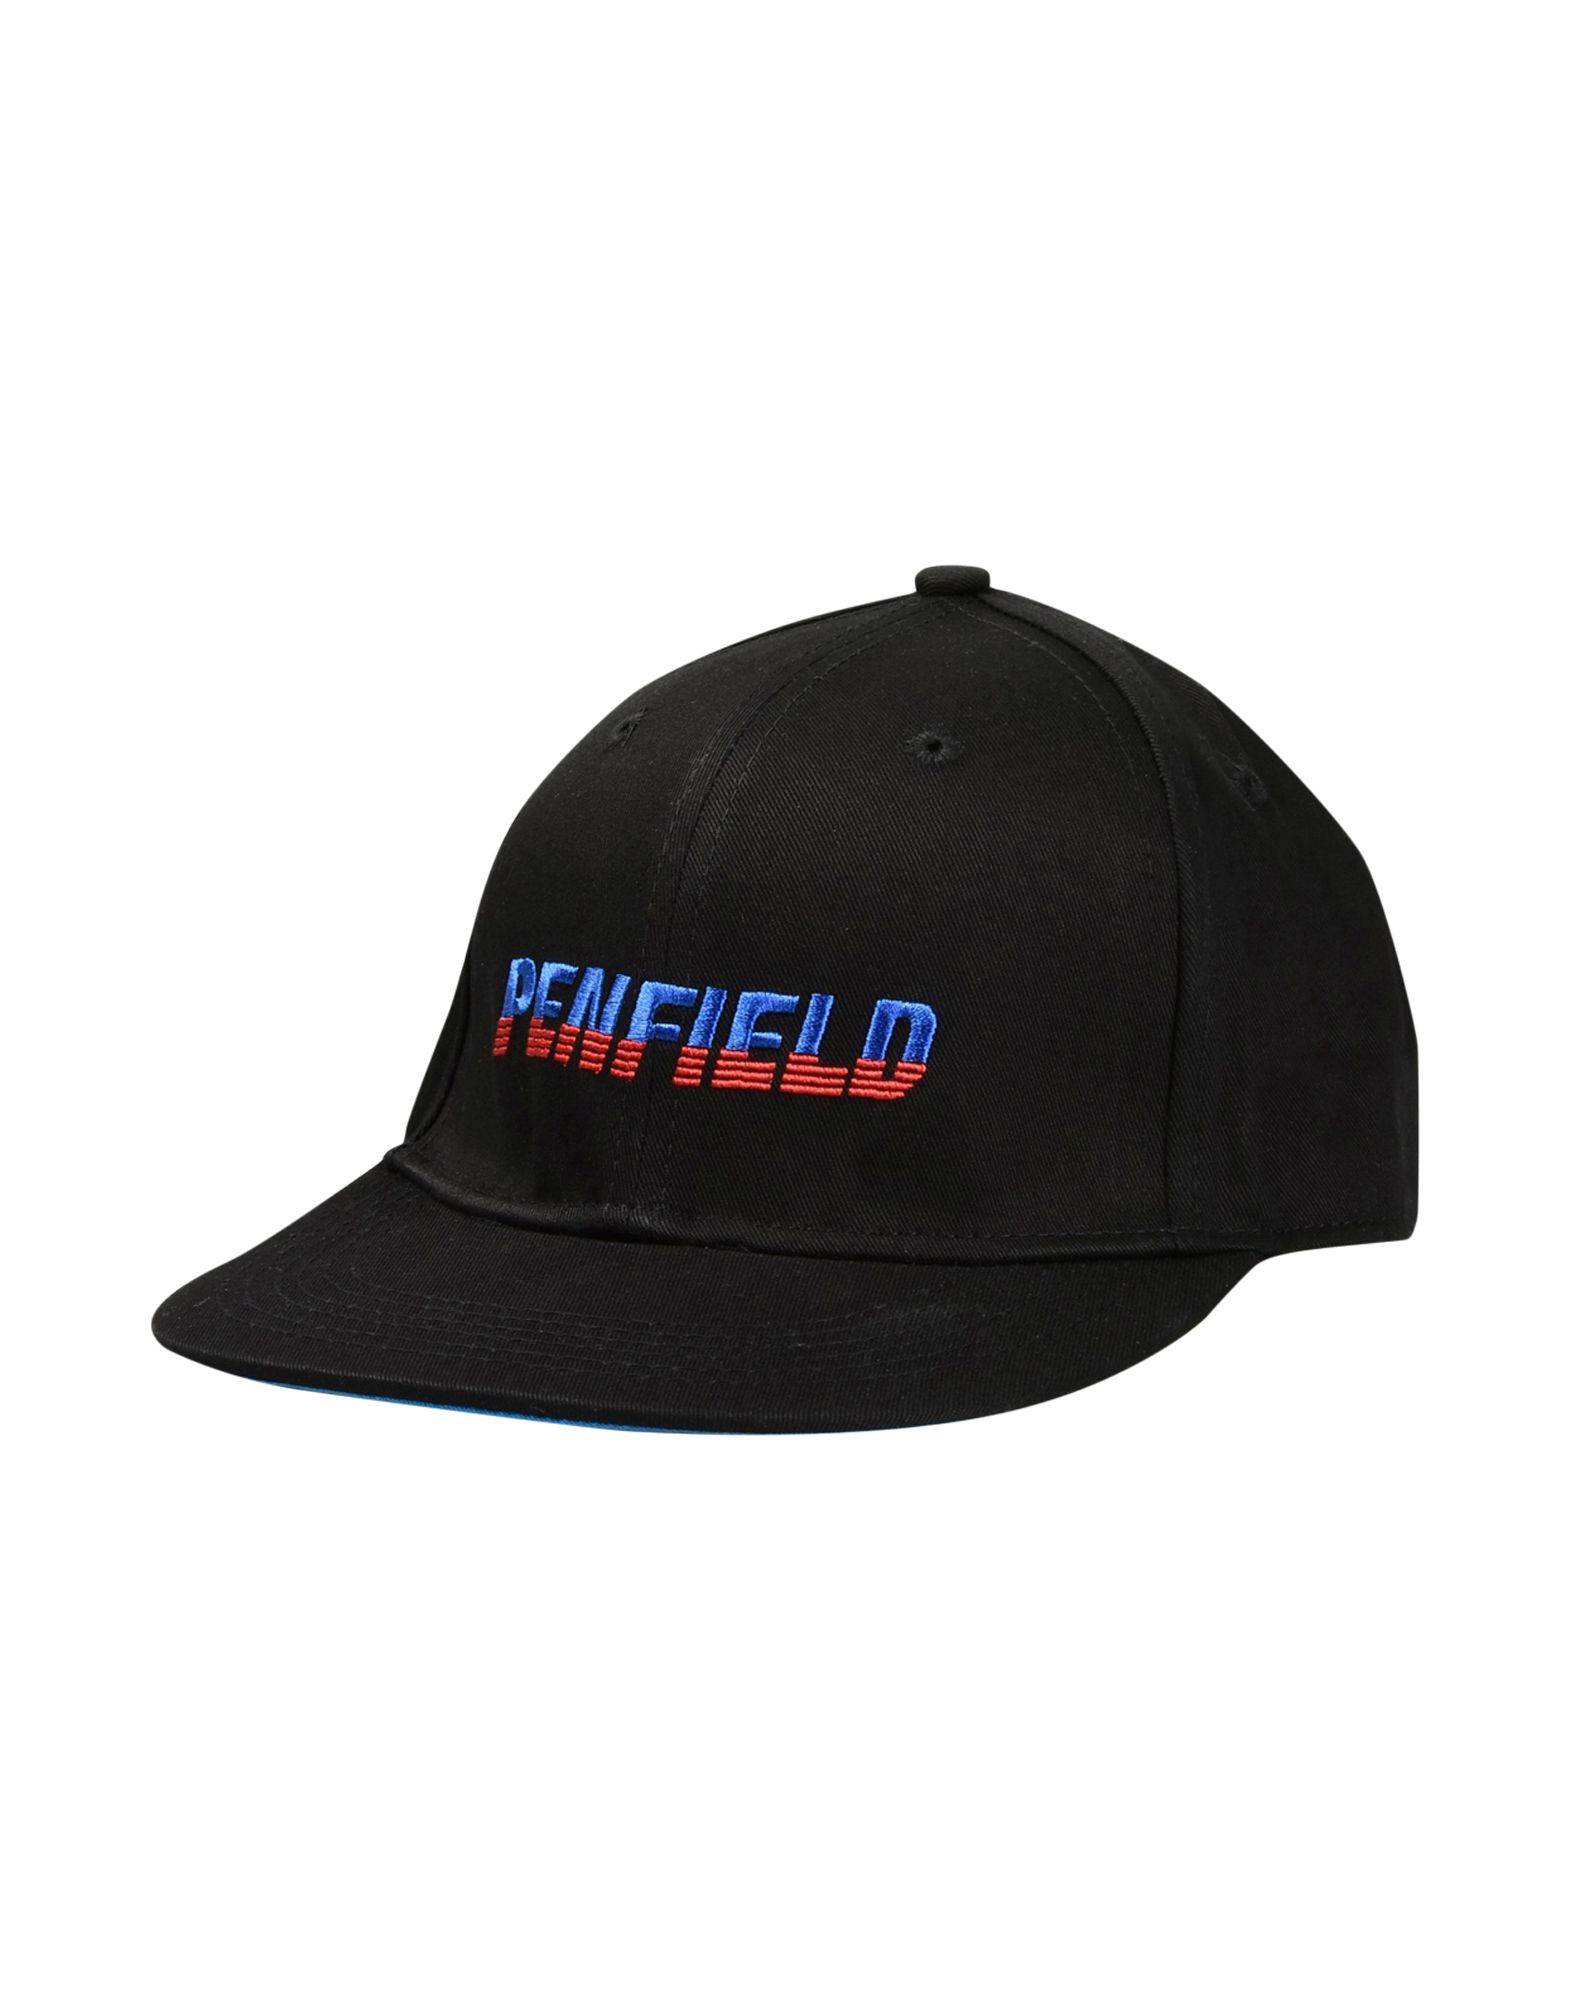 《送料無料》PENFIELD メンズ 帽子 ブラック one size コットン 100% SIMMONS CAP EMBROIDERED GRAPHIC 6 PANEL CAP